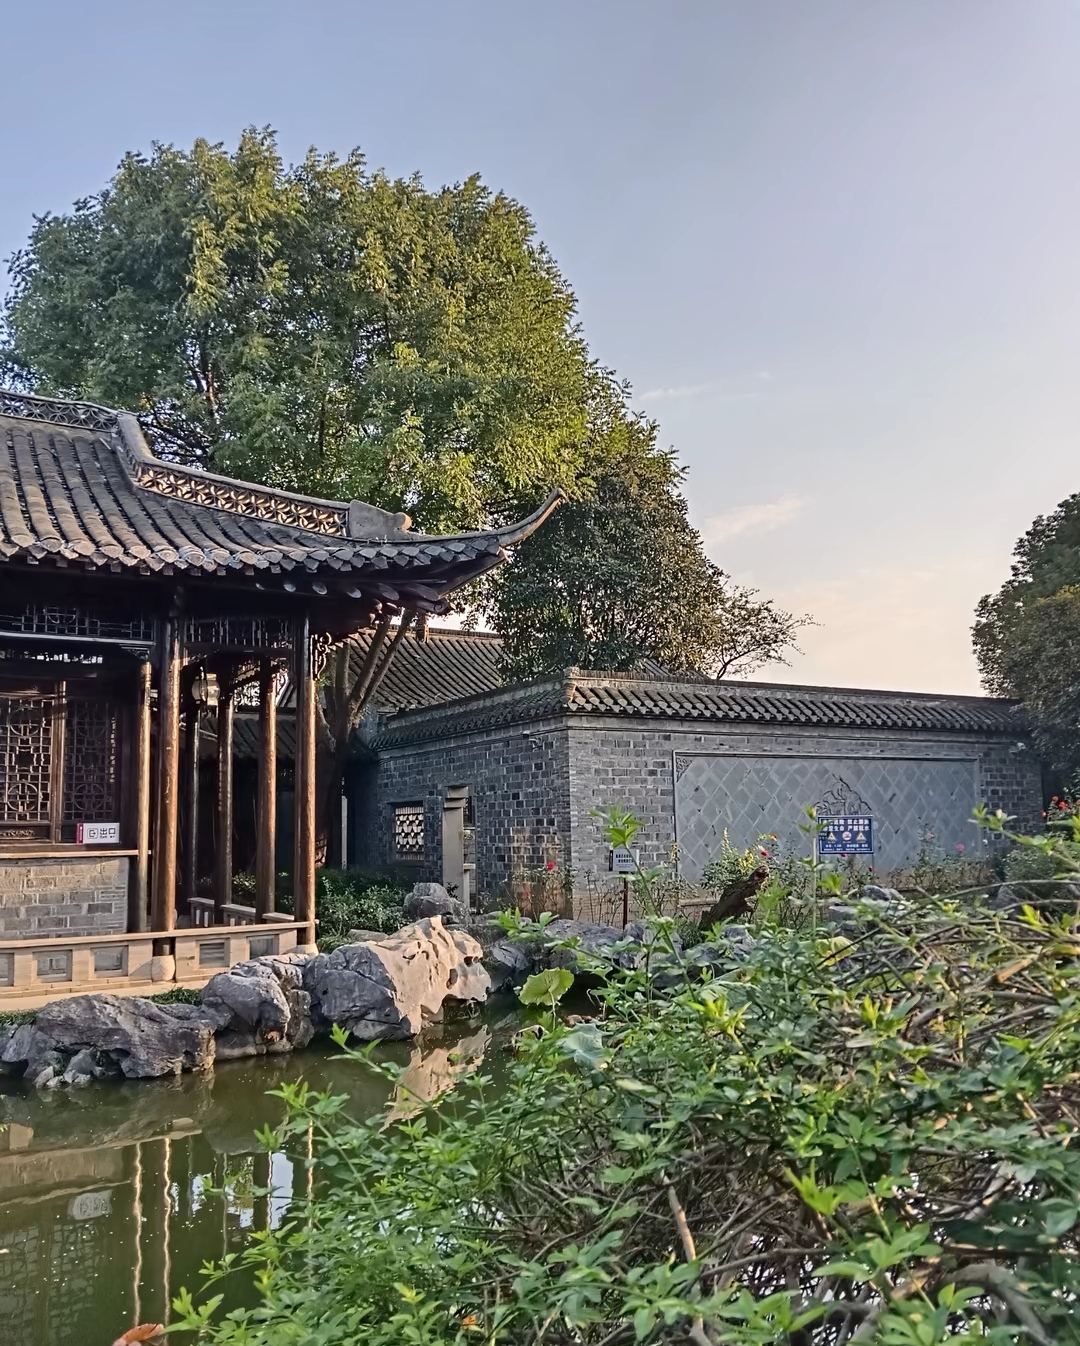 南京周边一日游，这次来到了美丽的滁州，带你领略山水之美和历史文化底蕴。 首先来到琅琊山，感受“醉翁之